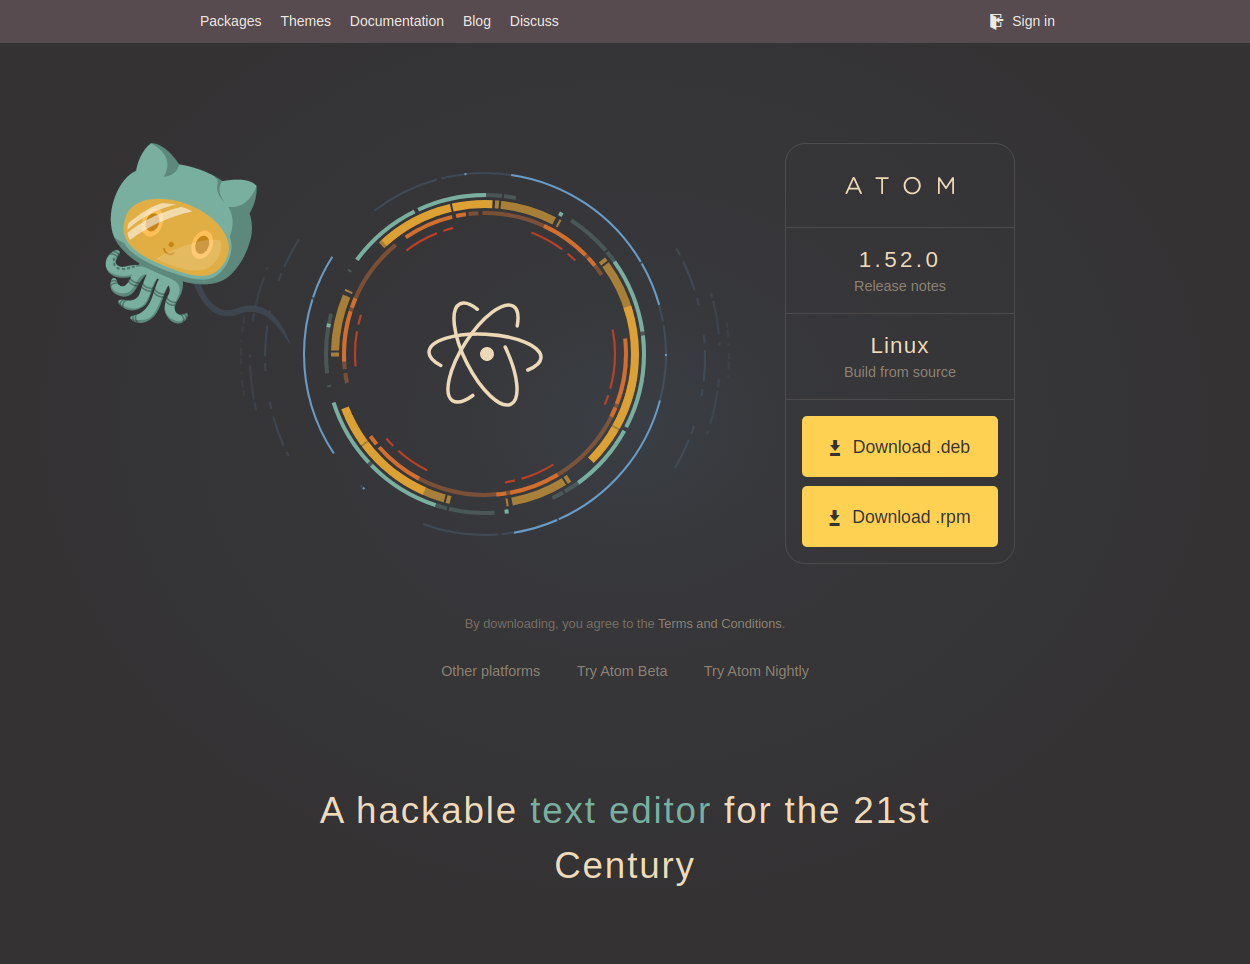 Atom official website
